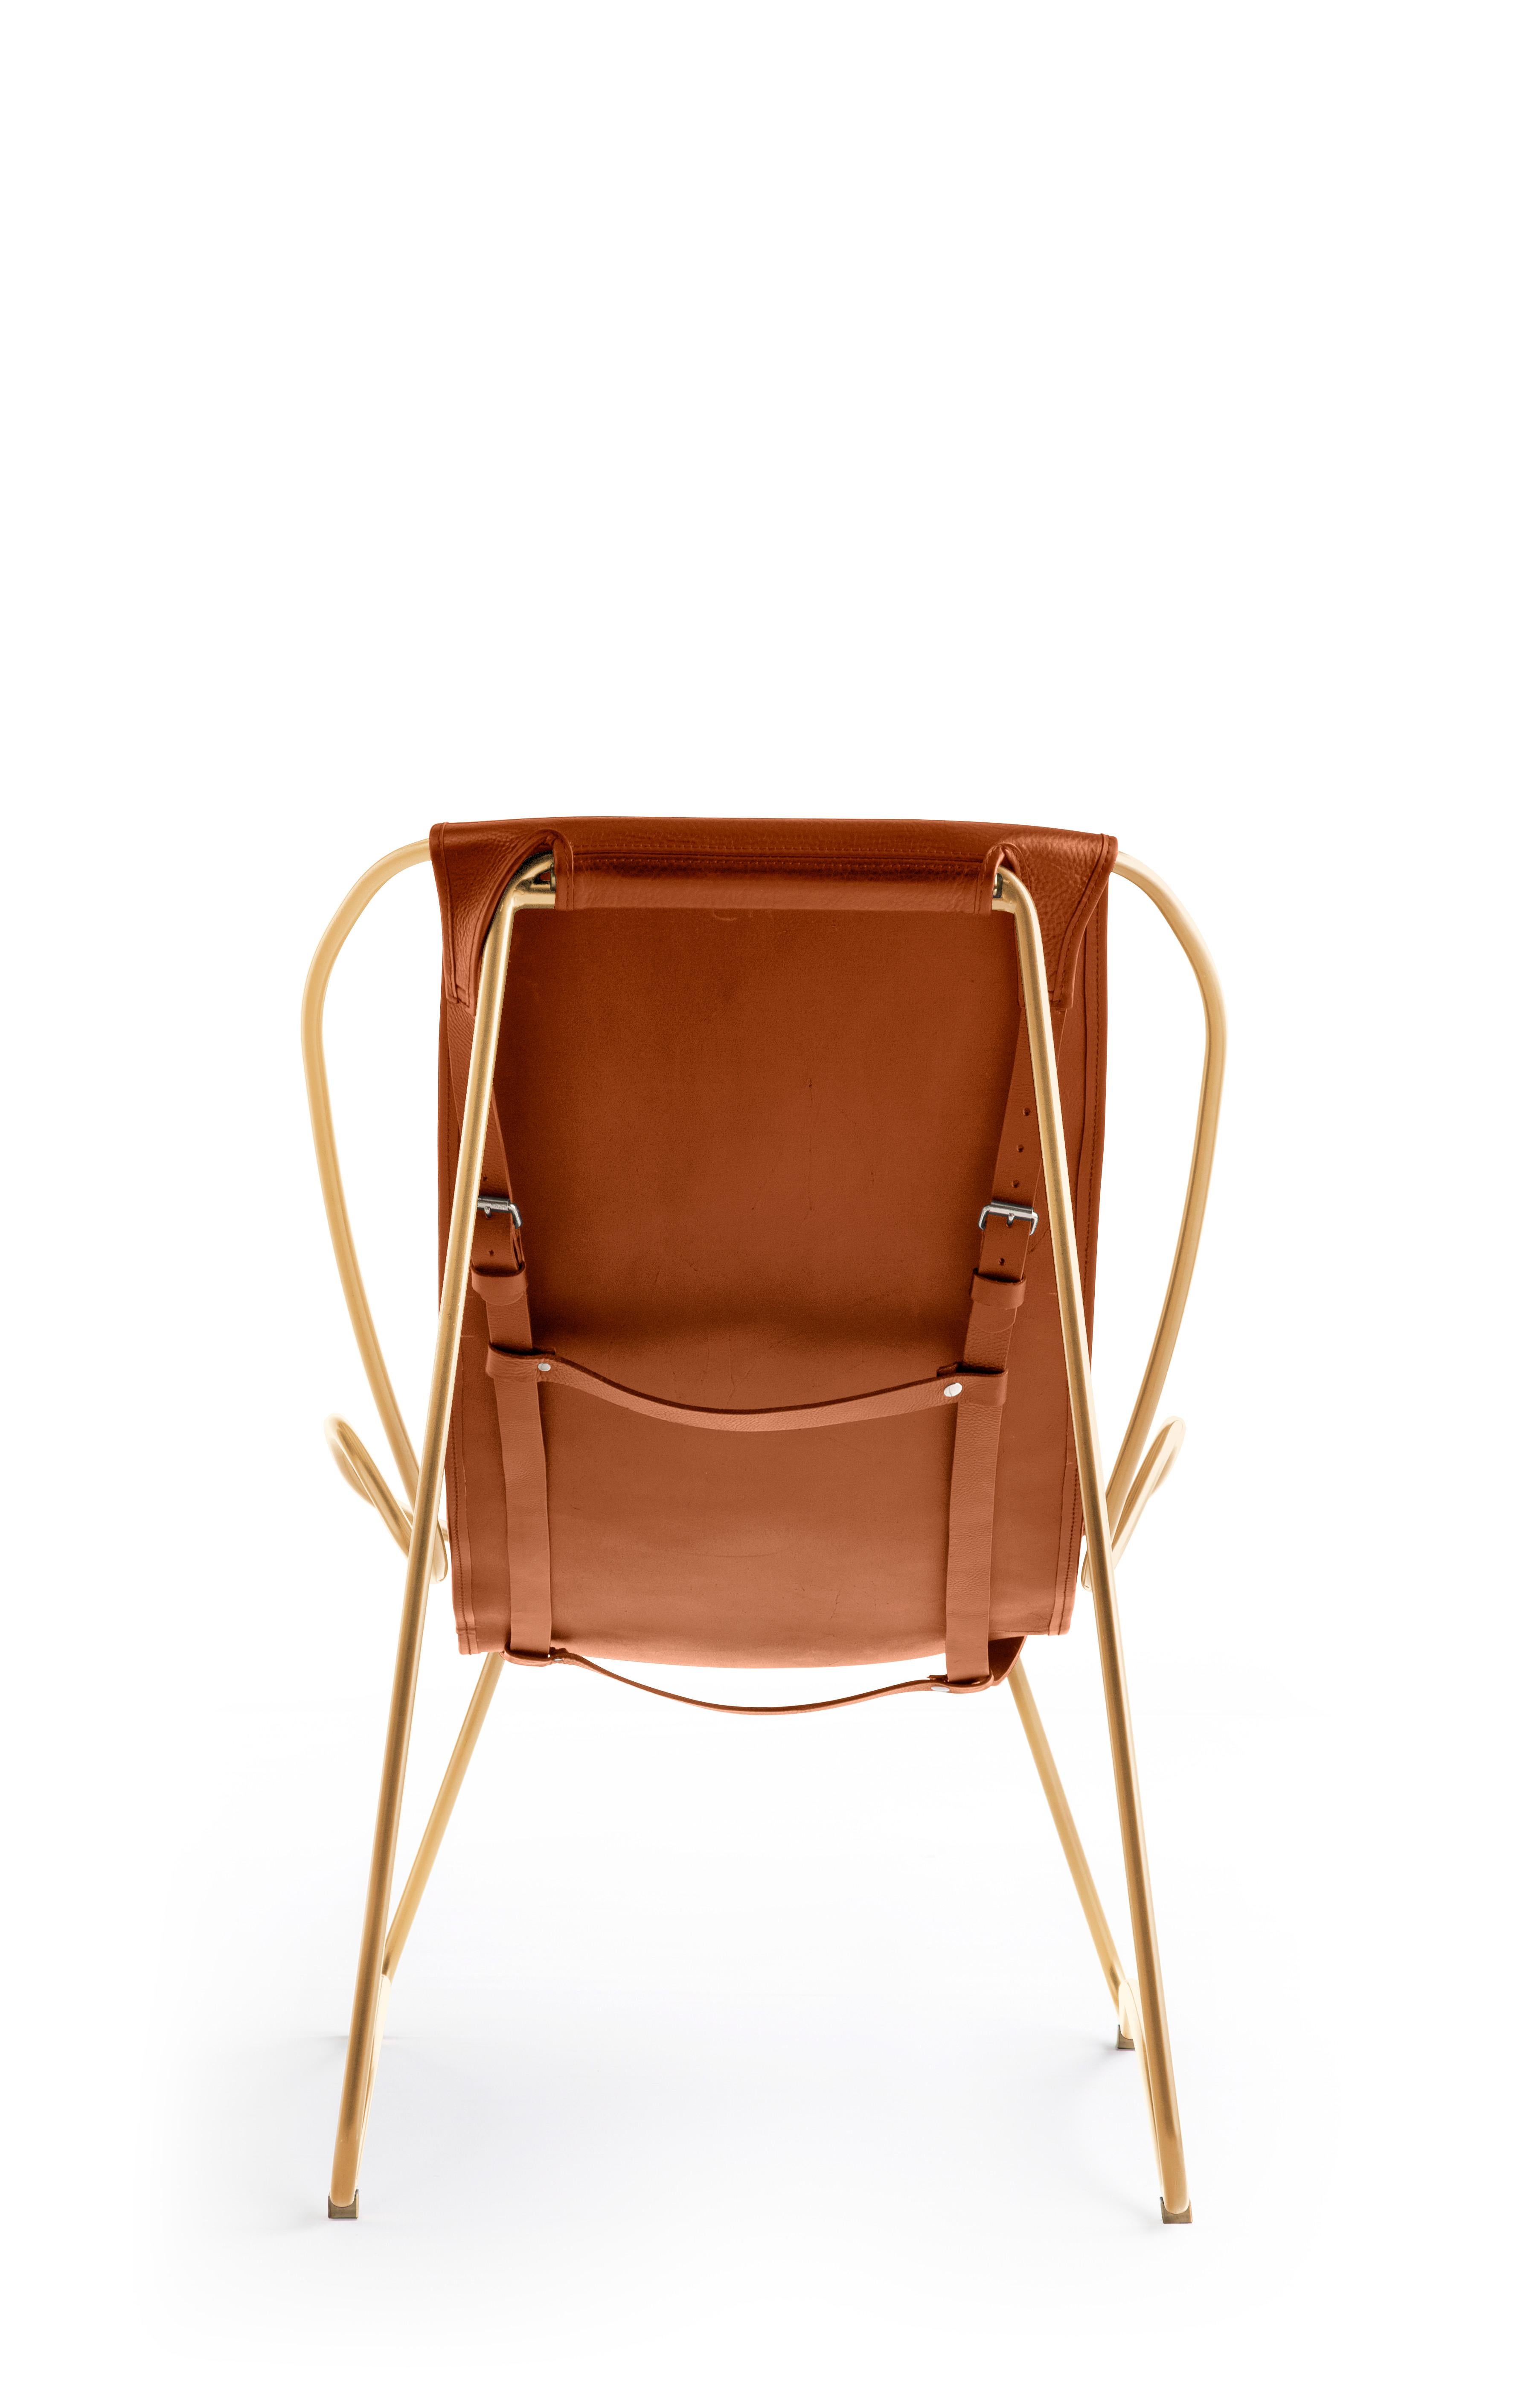 La chaise longue et l'ottoman AM Contemporary sont dessinés et conçus avec une esthétique légère. La légère oscillation de la tige en acier de 16/12 mm est complétée par la souplesse du double cuir de 3,5 mm d'épaisseur. En s'asseyant dans ce